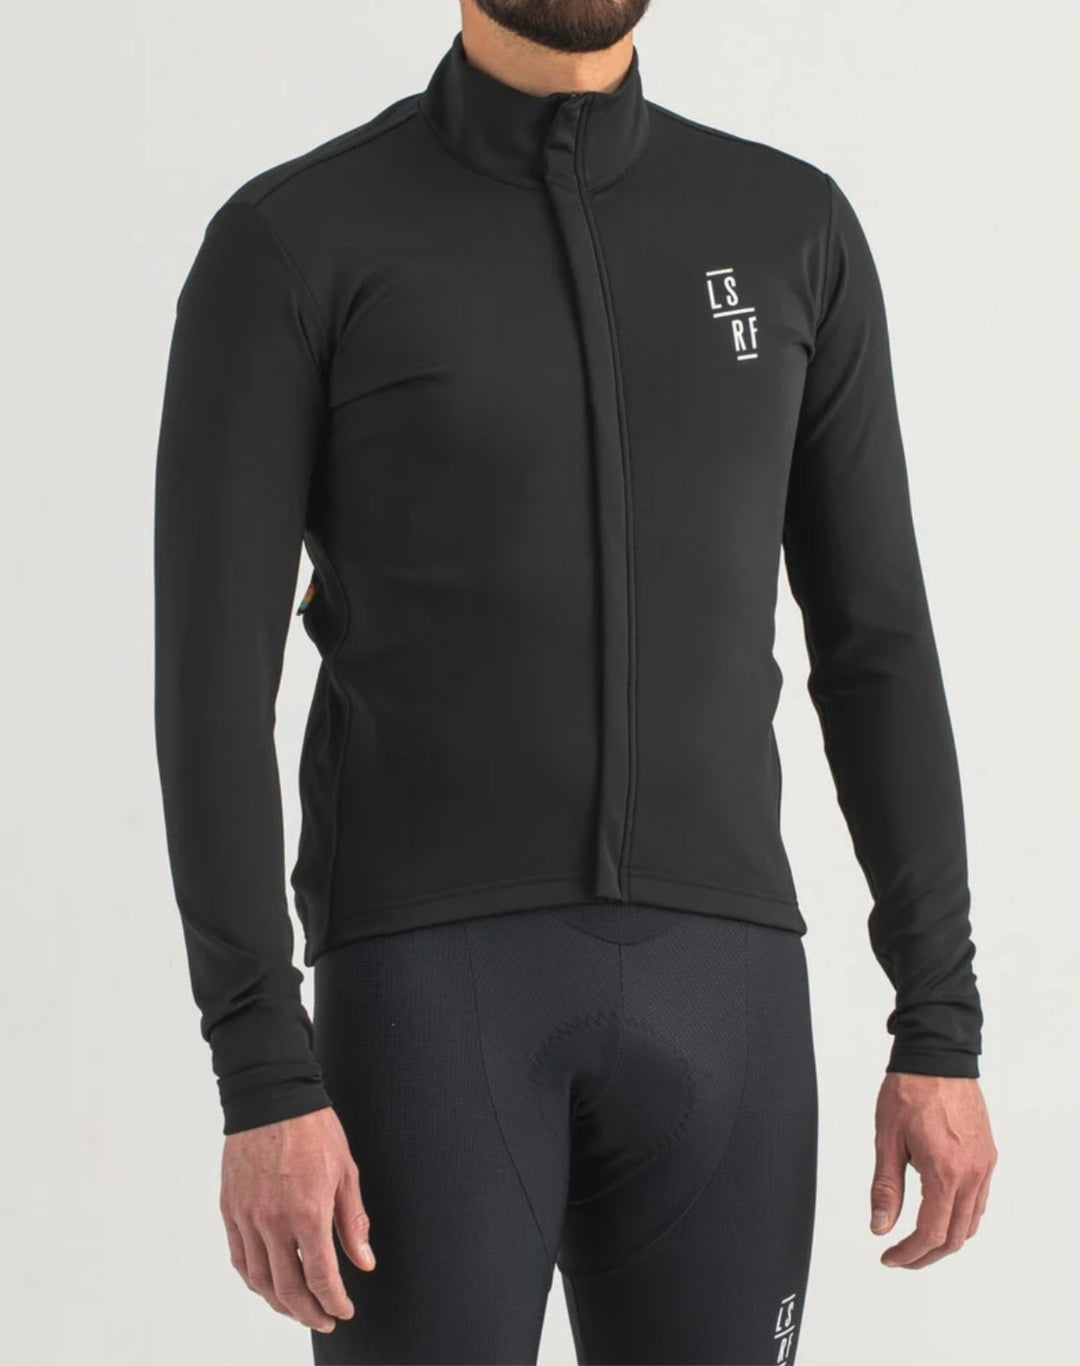 Cycling winter jacket in black 2024 LSRF